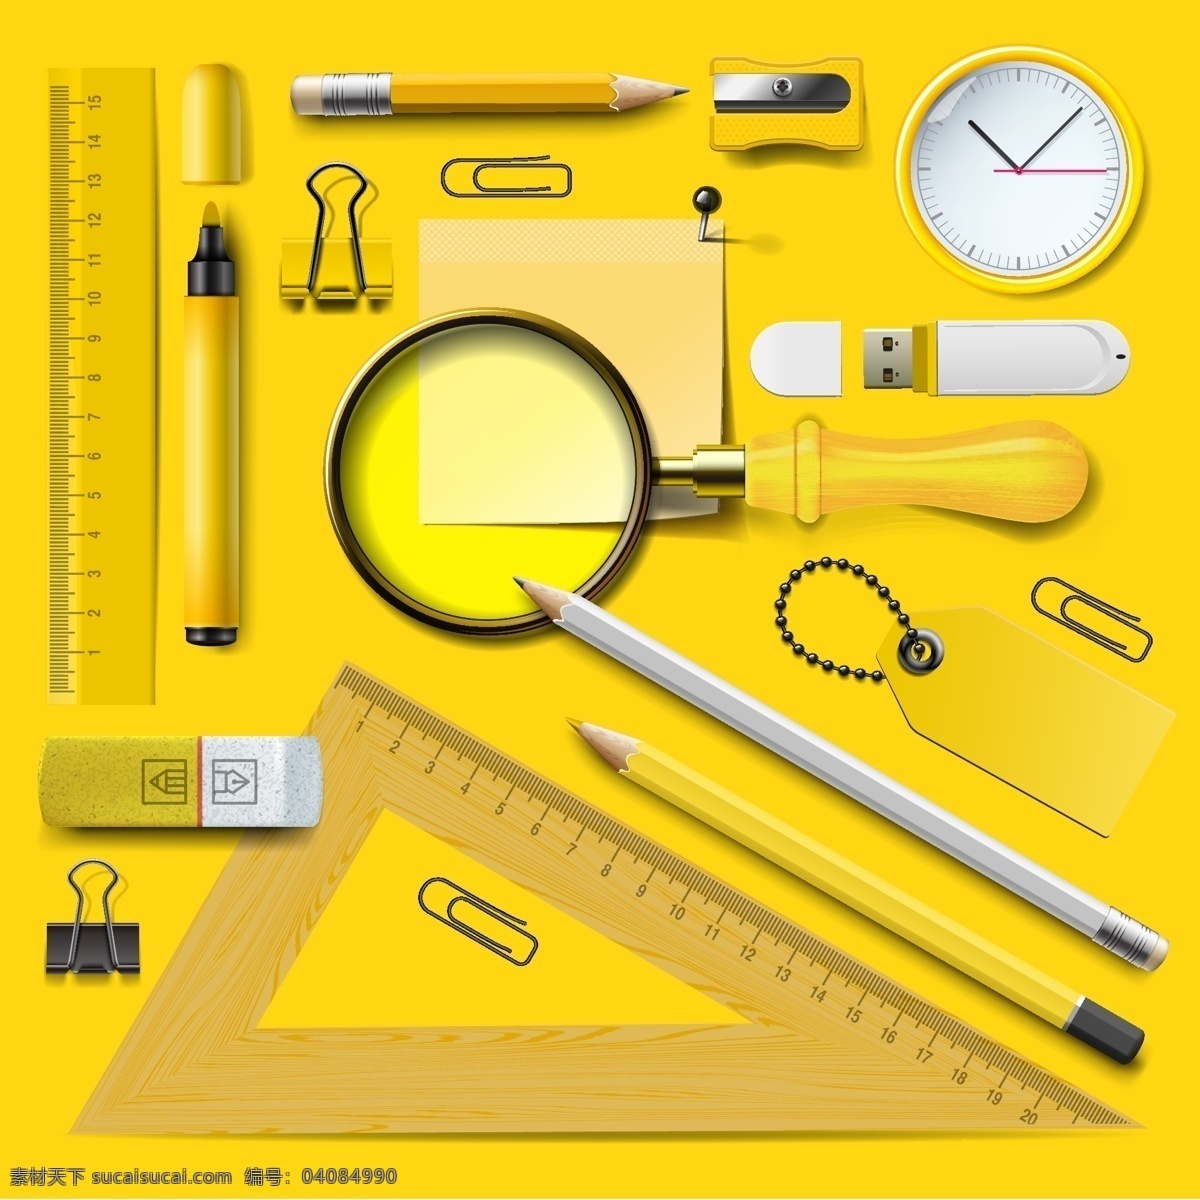 黄色 文具 组 学校 矢量 三角尺 铅笔 橡皮擦 矢量素材 黄色文具组